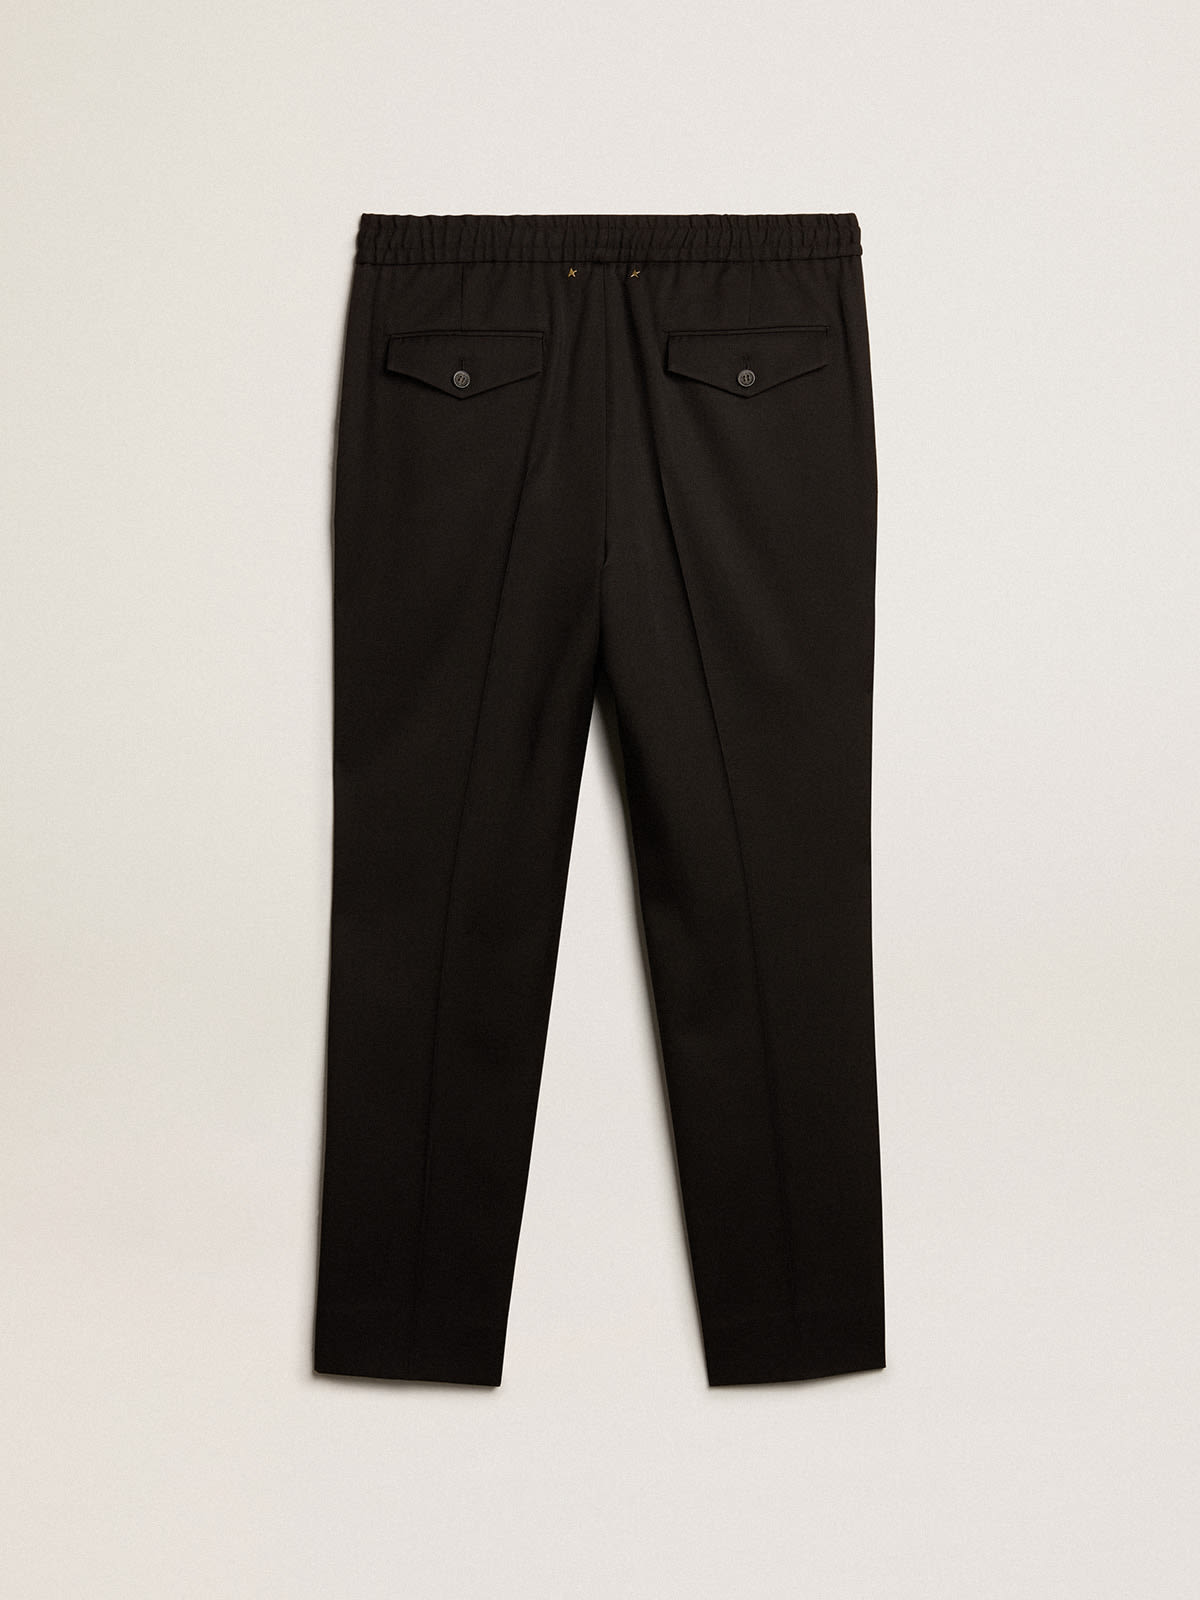 Men's black wool gabardine pants